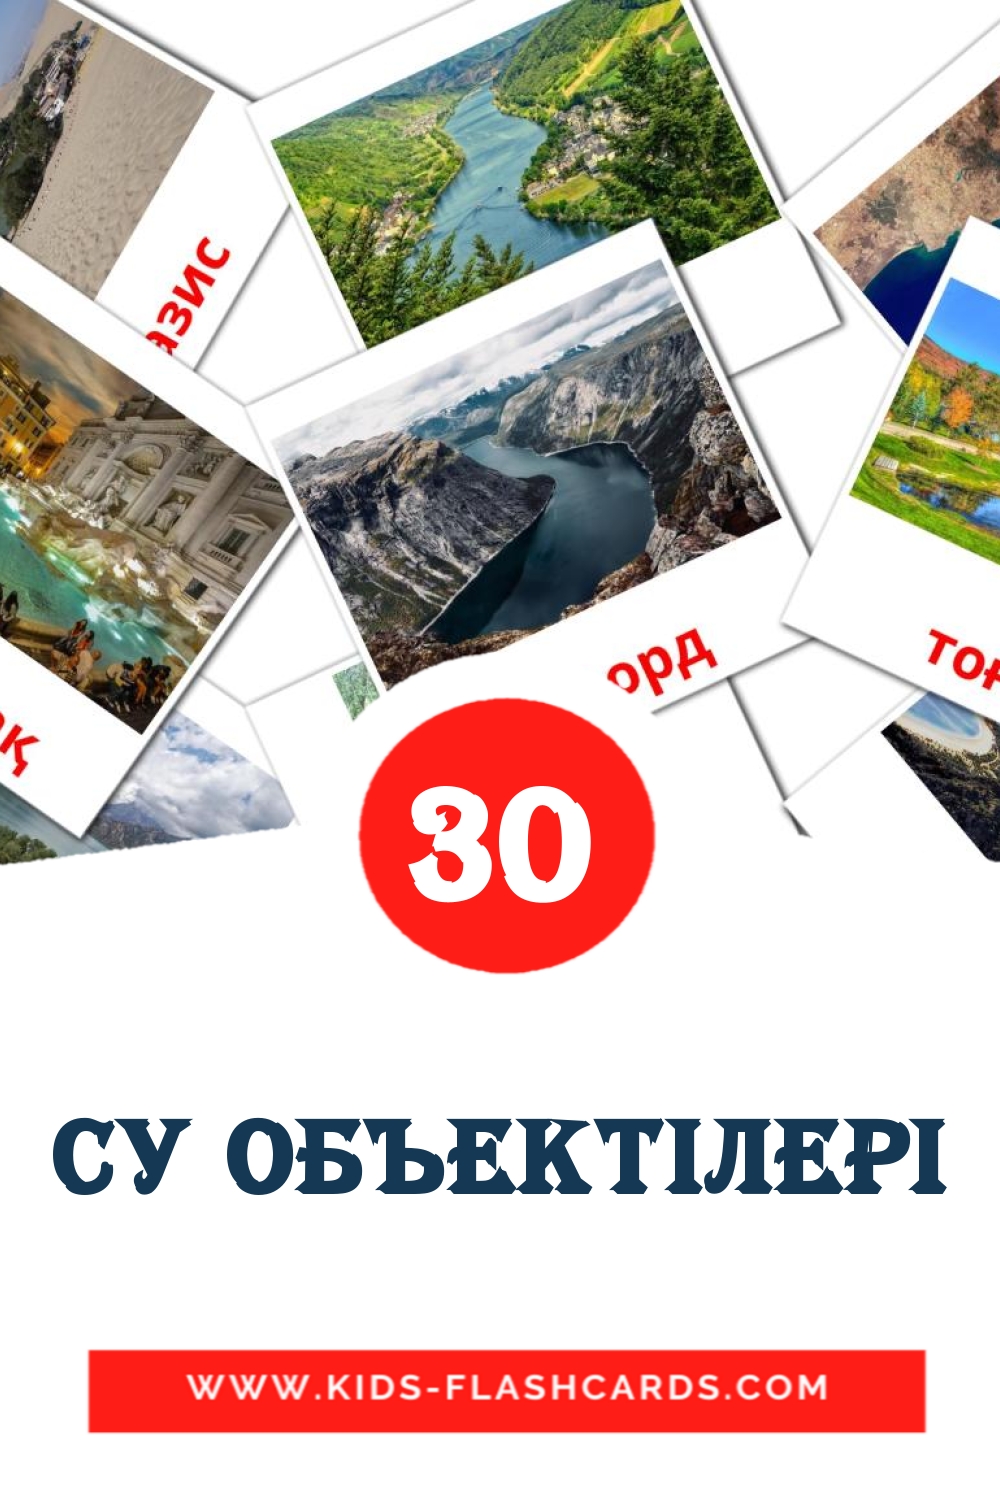 Су объектілері на казахском для Детского Сада (30 карточек)